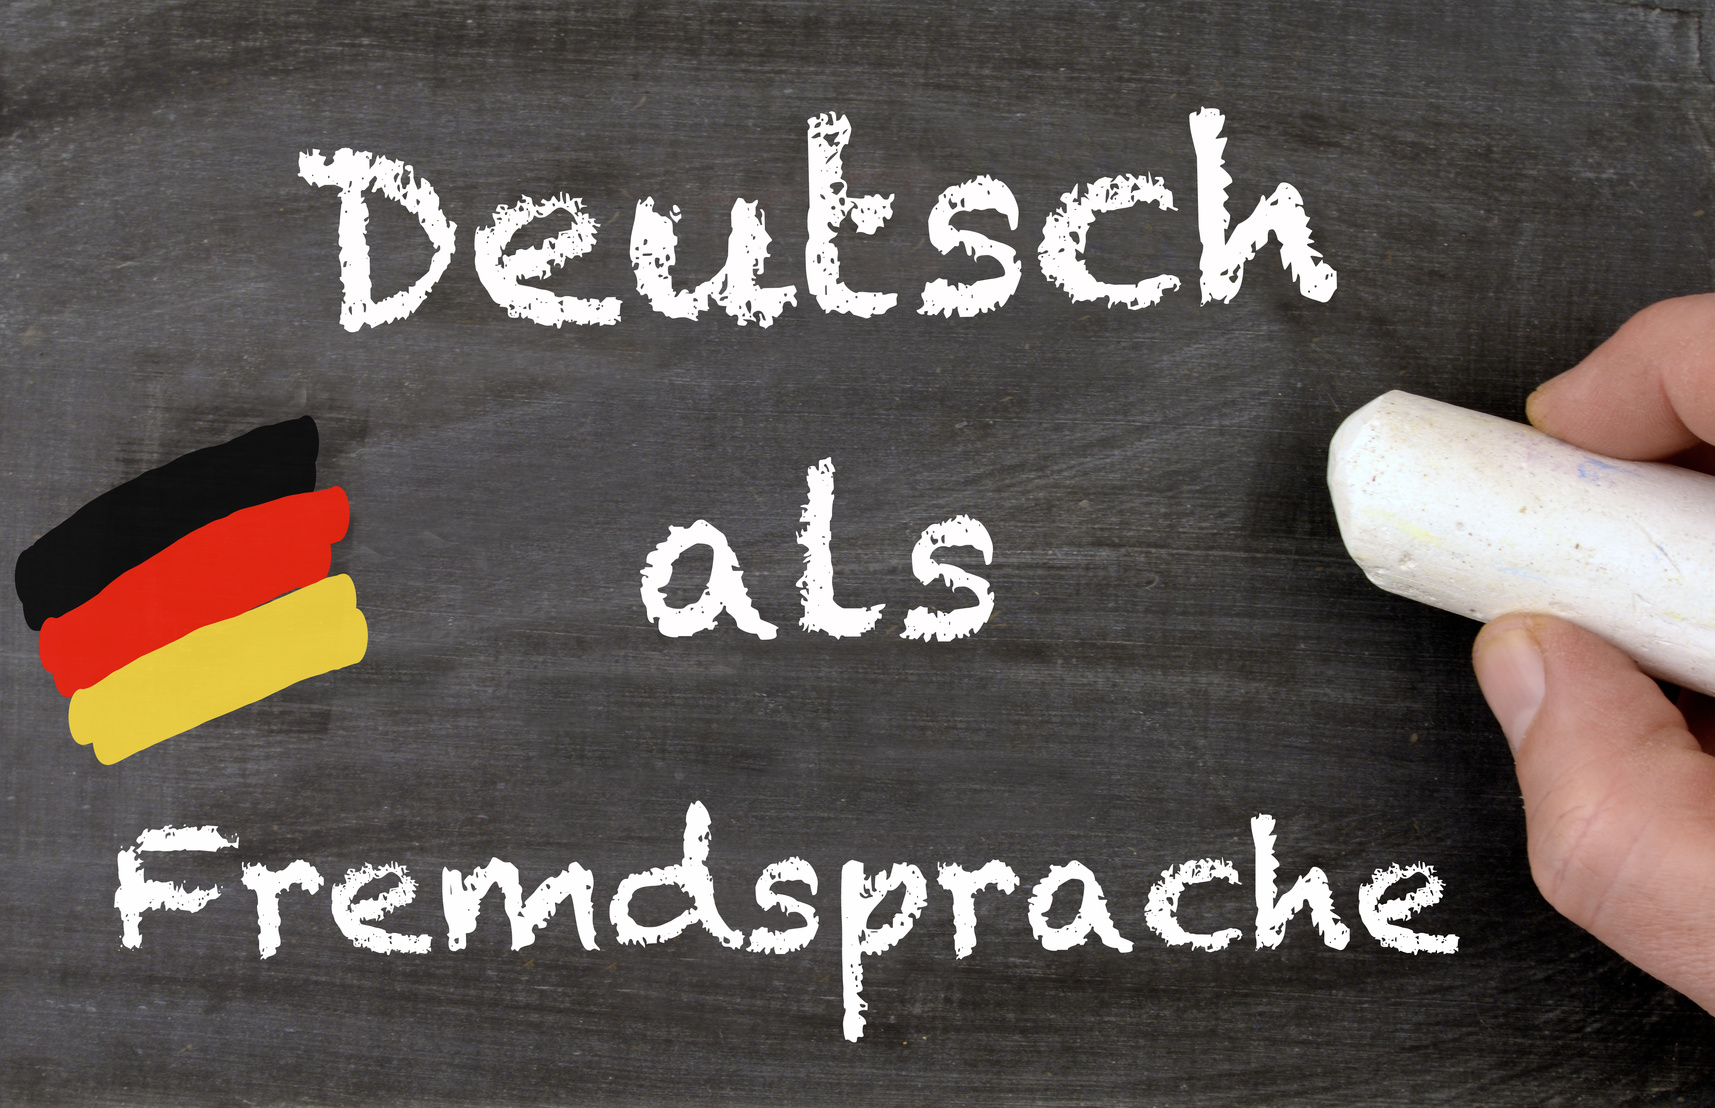 یادگیری زبان آلمانی در ﮐﻮﺗﺎﻫﺘﺮﯾﻦ زمان